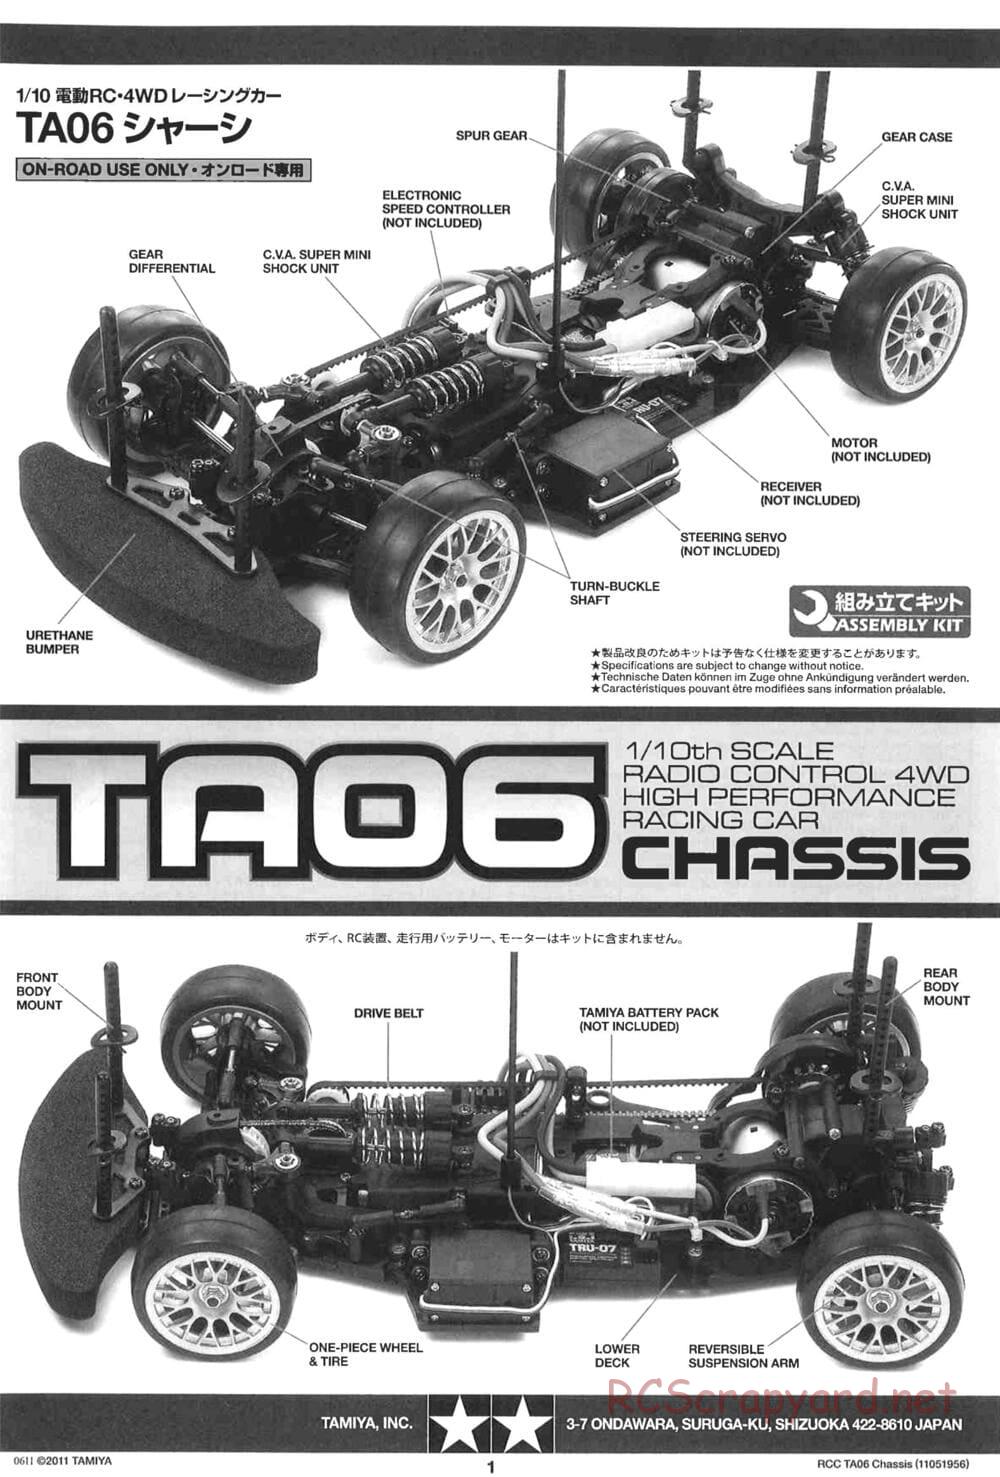 Tamiya - TA06 Chassis - Manual - Page 1